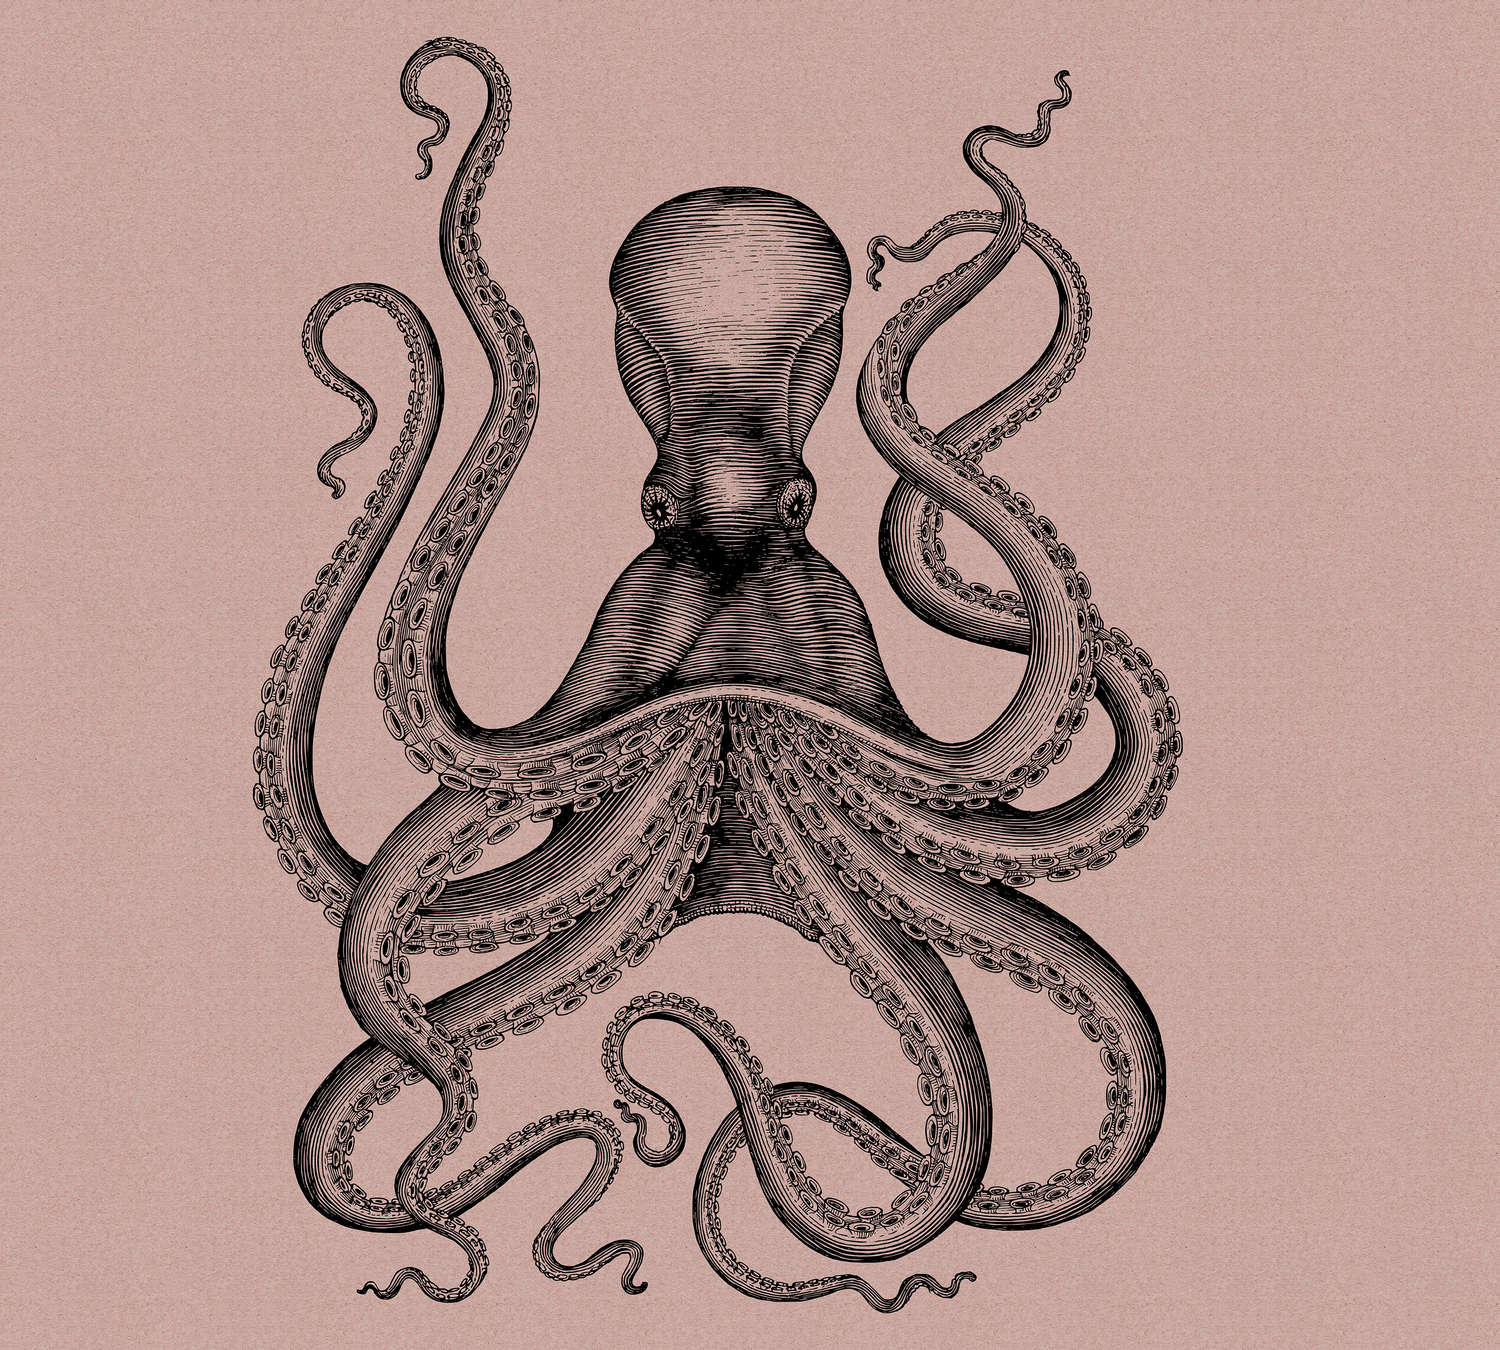             Jules 1 - Digital behang met octopus in tekening & retro stijl in kartonnen structuur - Roze, Zwart | Strukturen vlieseline
        